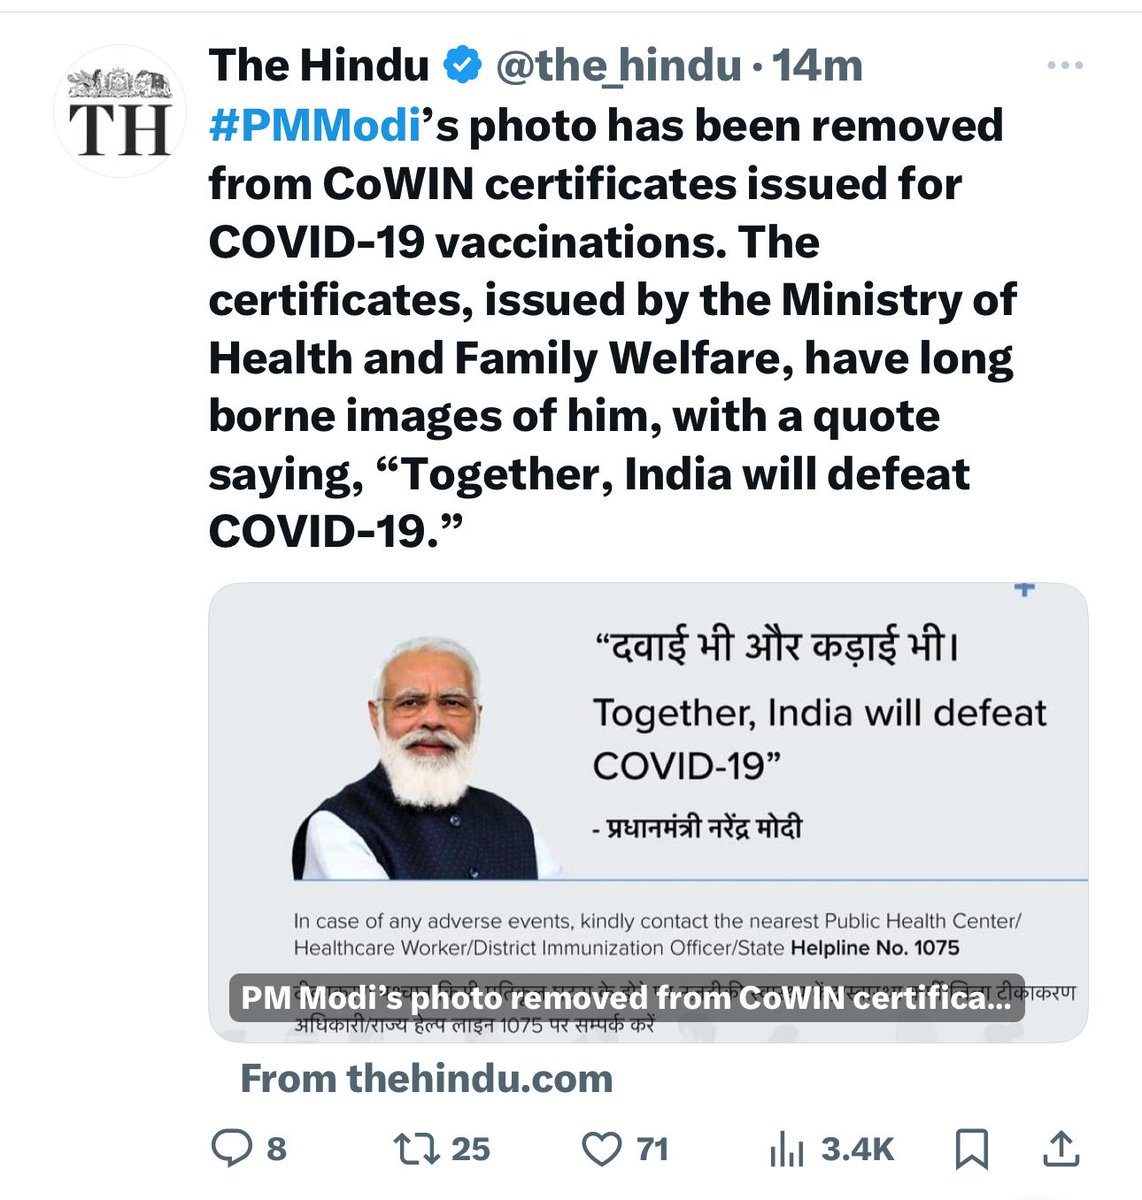 सुबह से दो बार पोस्ट किया है यह न्यूज़ The Hindu News Paper ने बिना यह बताये कि ऐसा आचार संहिता की वजह से हुआ है। सीधा सीधा उनकी मंशा अगले चरण से पहले इसी आधार पर वोटर को प्रभावित करने की है। @PMOIndia @HMOIndia @the_hindu